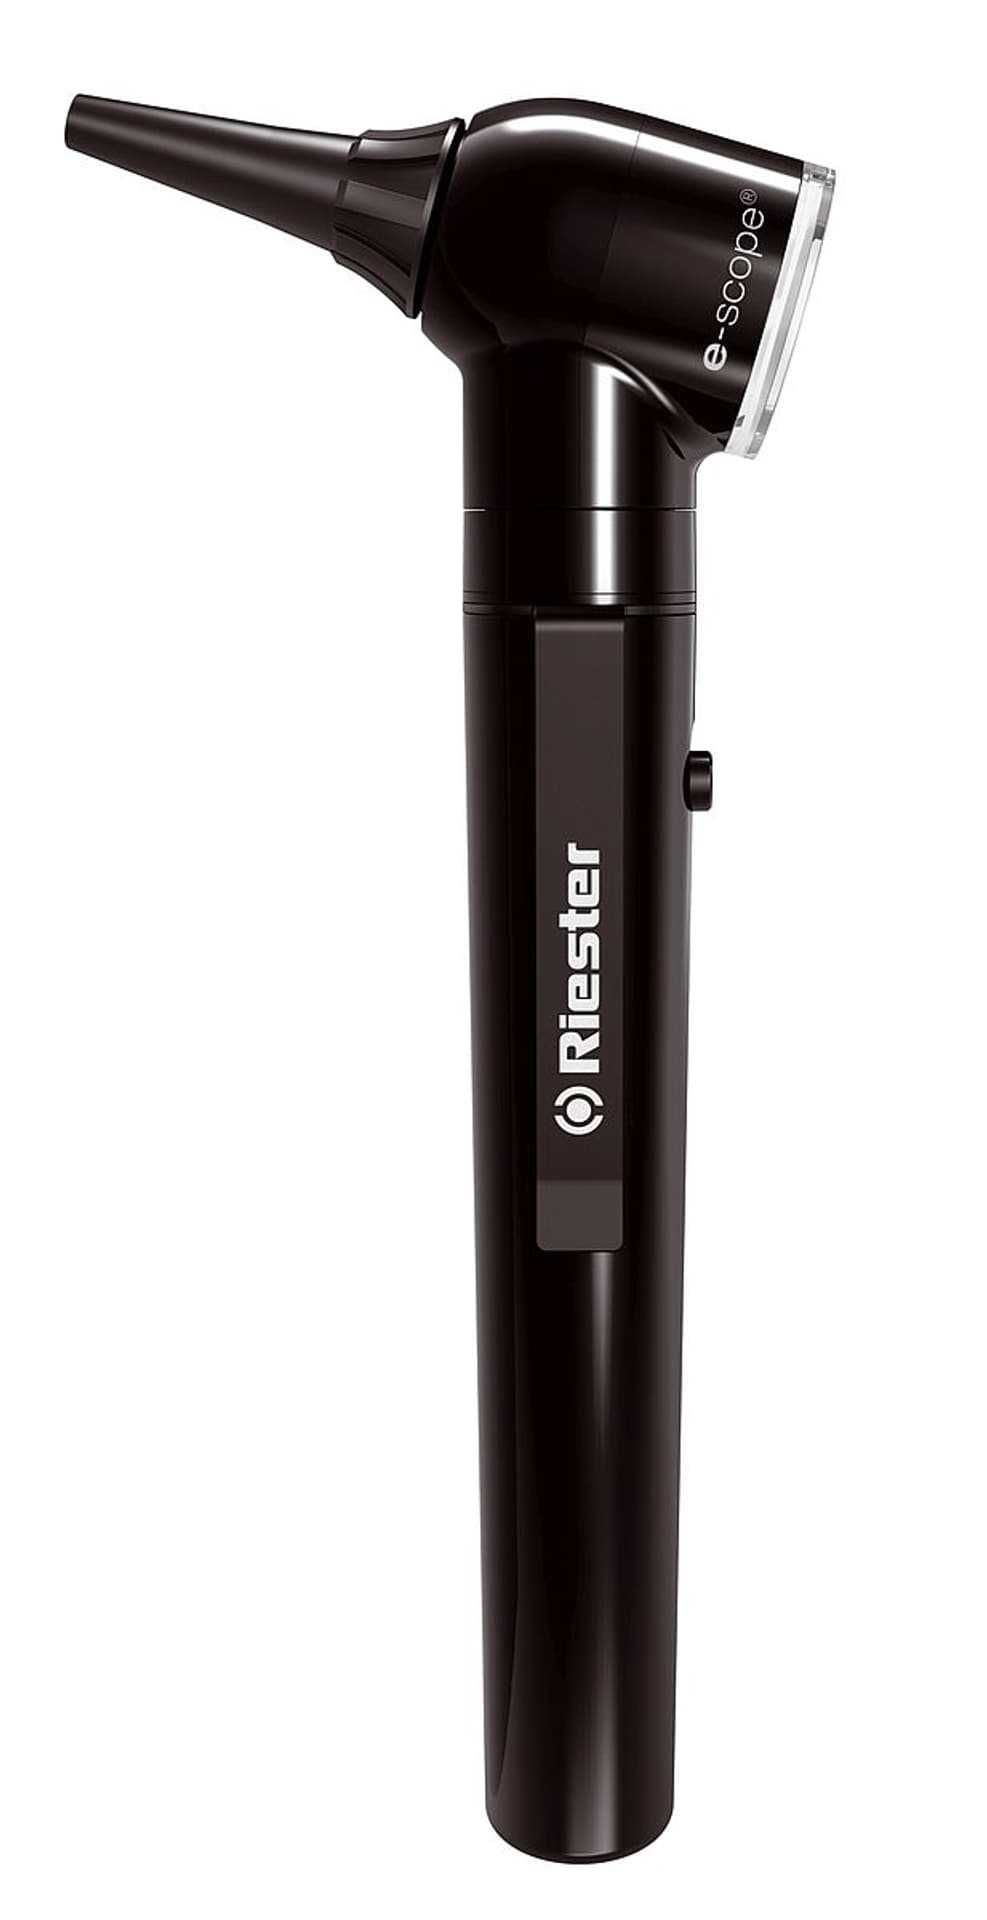 Riester e-scope 2,5 V w  miękkim etui czarny 2101-201 Kierunkowy otoskop e-scope  z ksenonowym oświetleniem 2,5 V